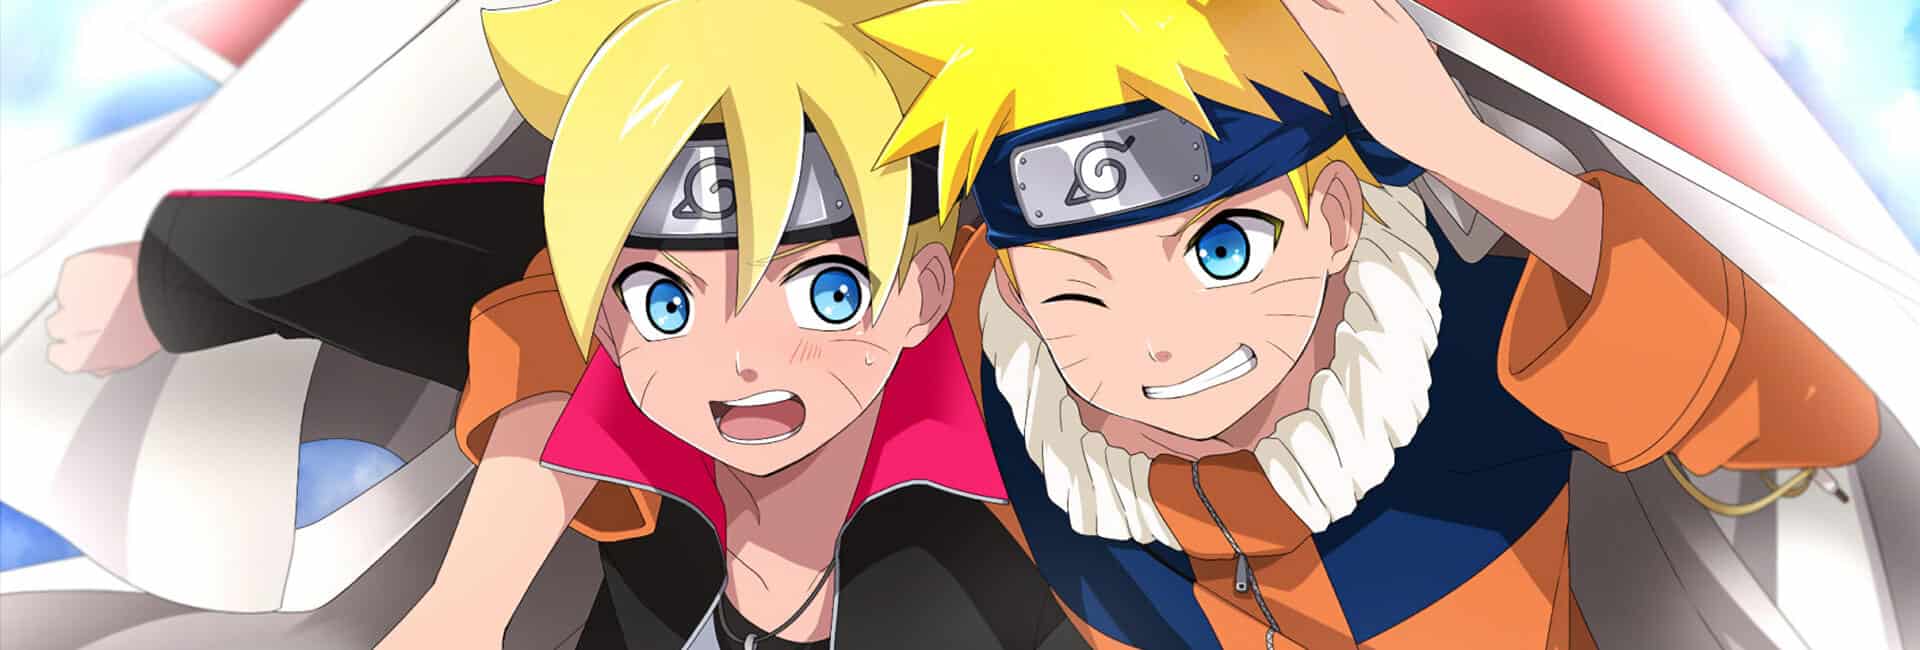 Naruto e Boruto crianças aparecem na imagem com seus olhos expressivos, grandes no estilo de arte japonesa